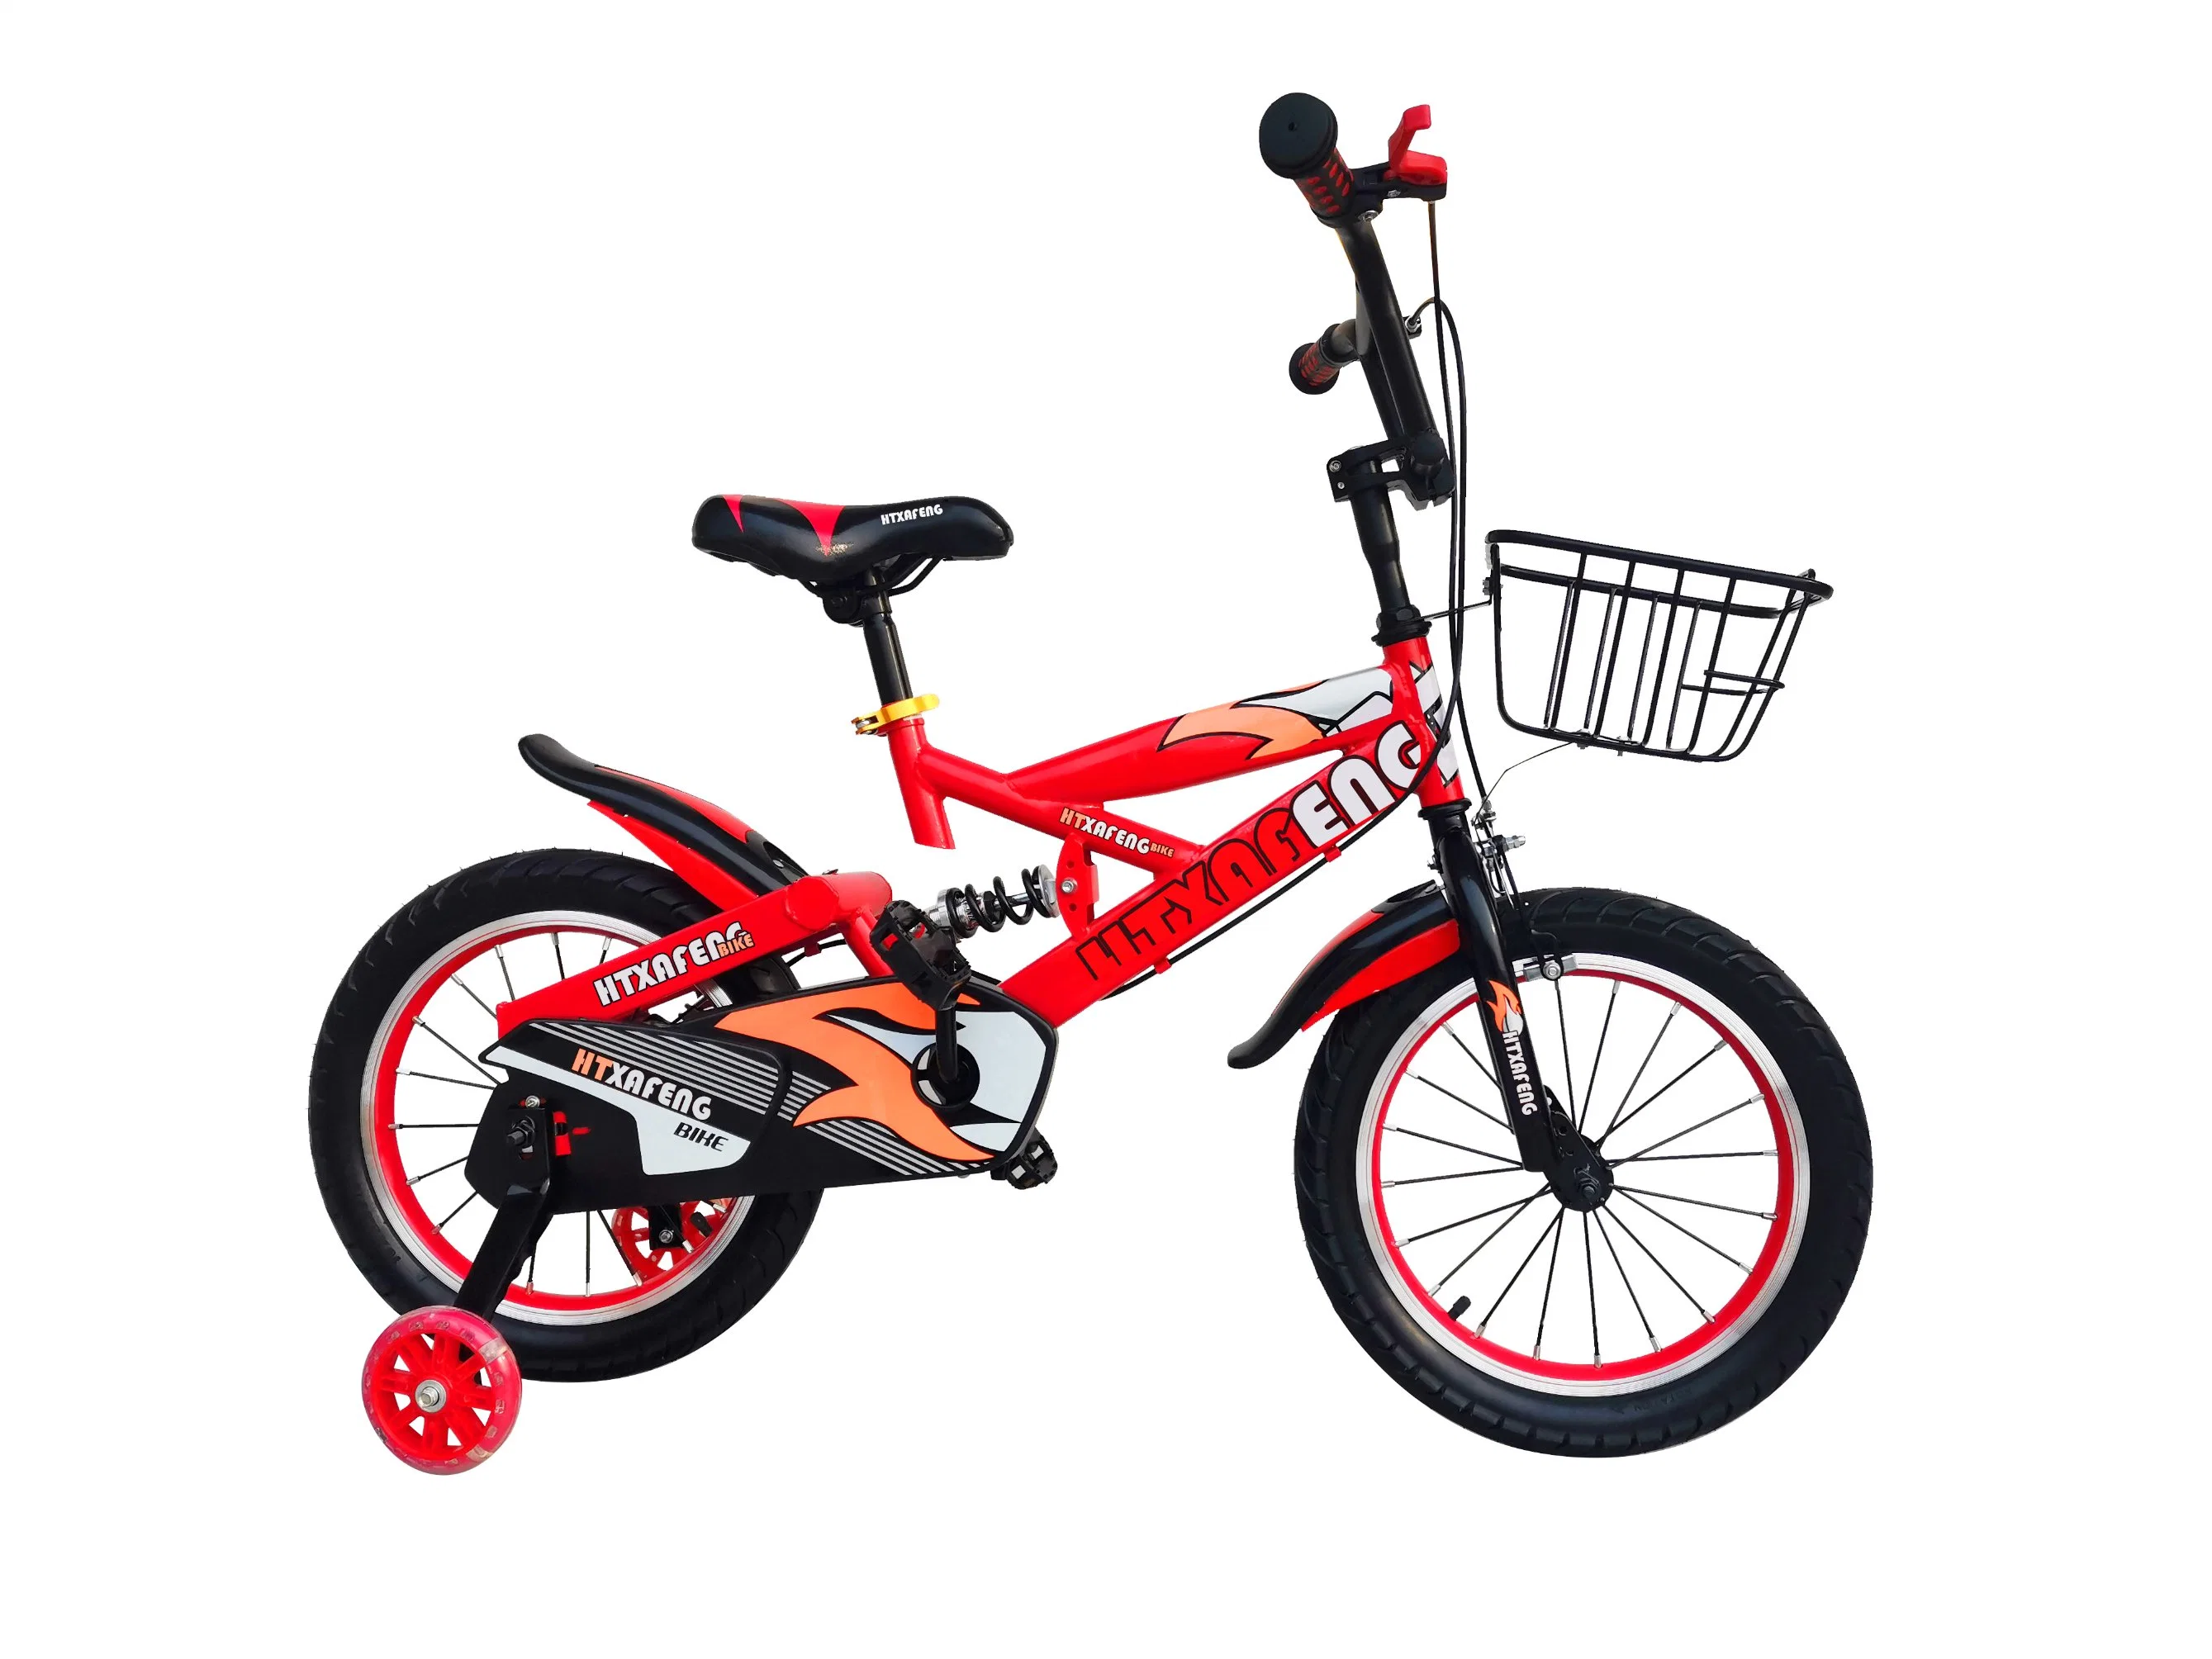 Venda Direta de Fábrica Bicicleta de 16, 18 e 20 polegadas para Crianças Certificado CE Bicicleta de Estrada Bicicleta de várias cores opções para crianças com rodinhas de treinamento e freio de mão.